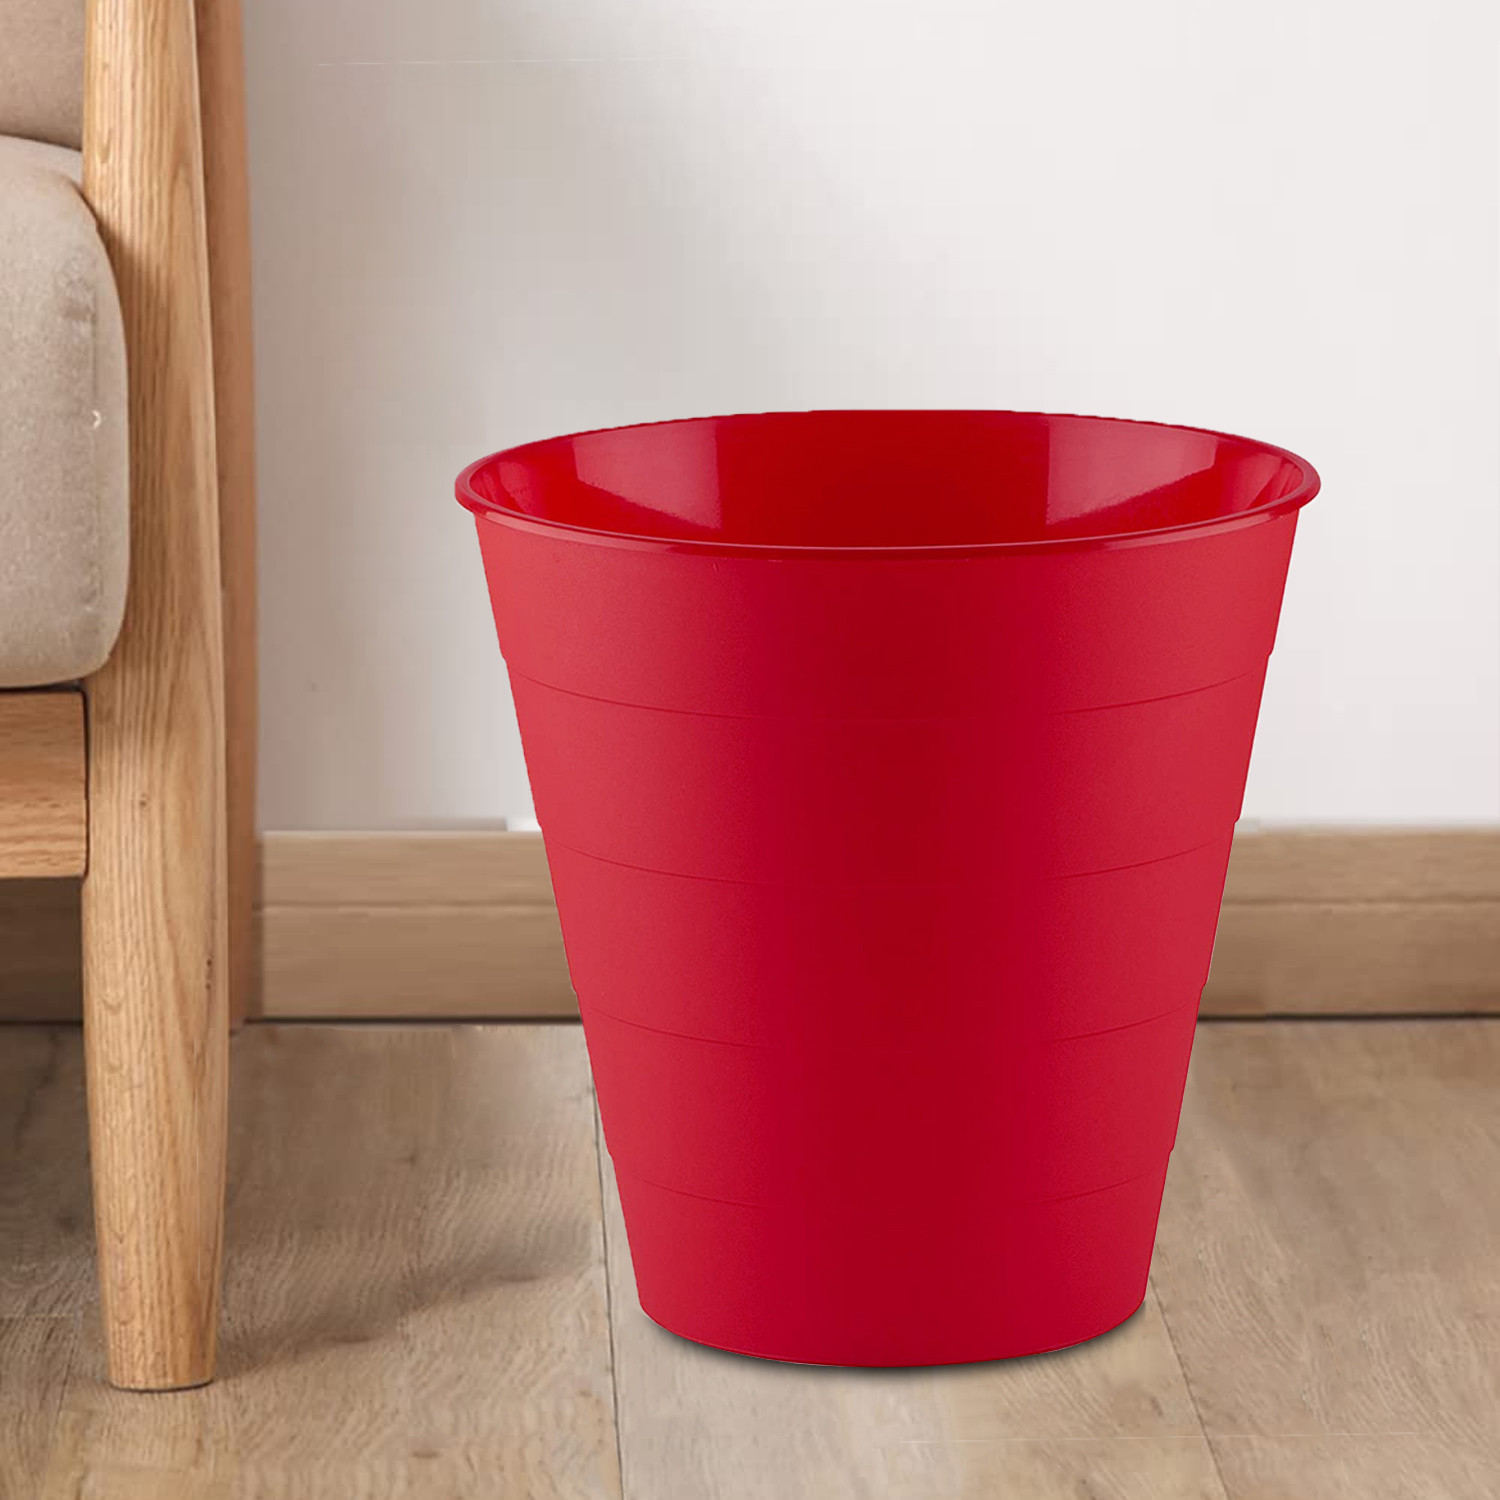 Kuber Industries Dustbin|Plastic Dustbin|Dustbins for Kitchen|Dustbin For Bedroom,Hall|Dustbin For office|8 Litre Dustbin (Red)